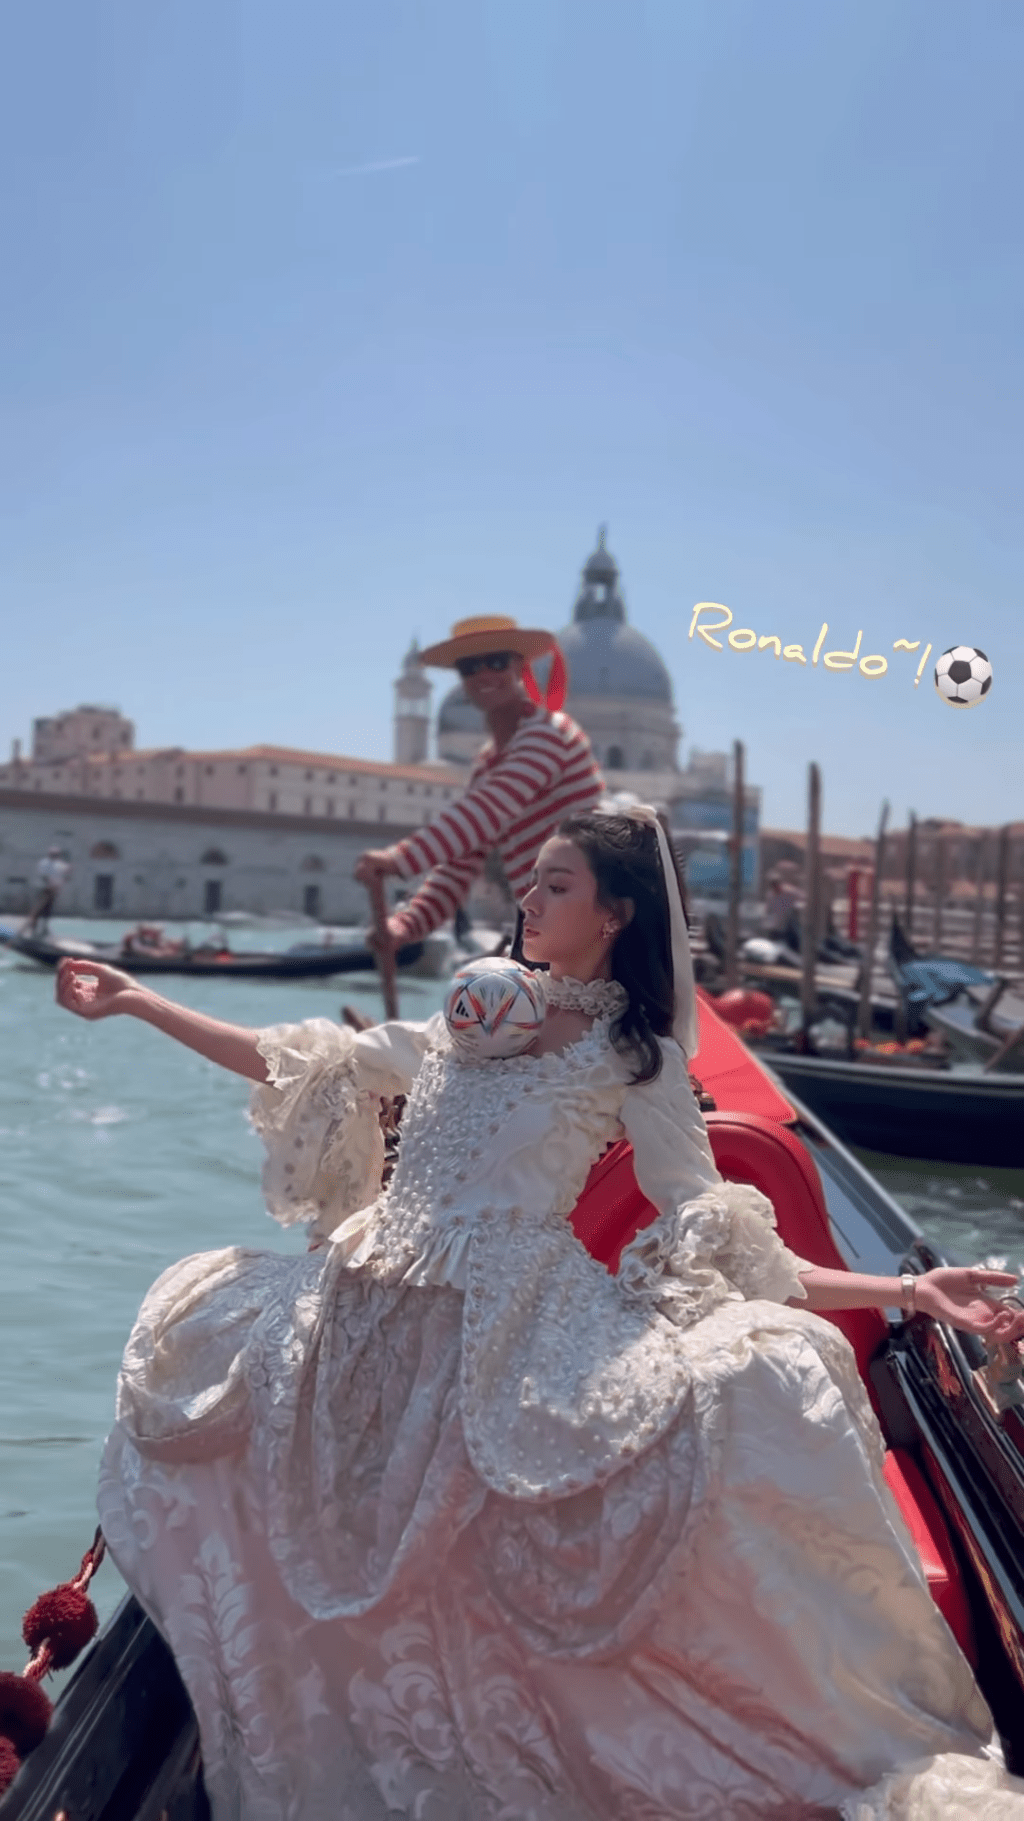 穿宫廷服的蔡思贝还在贡多拉（Gondola）上胸顶足球。